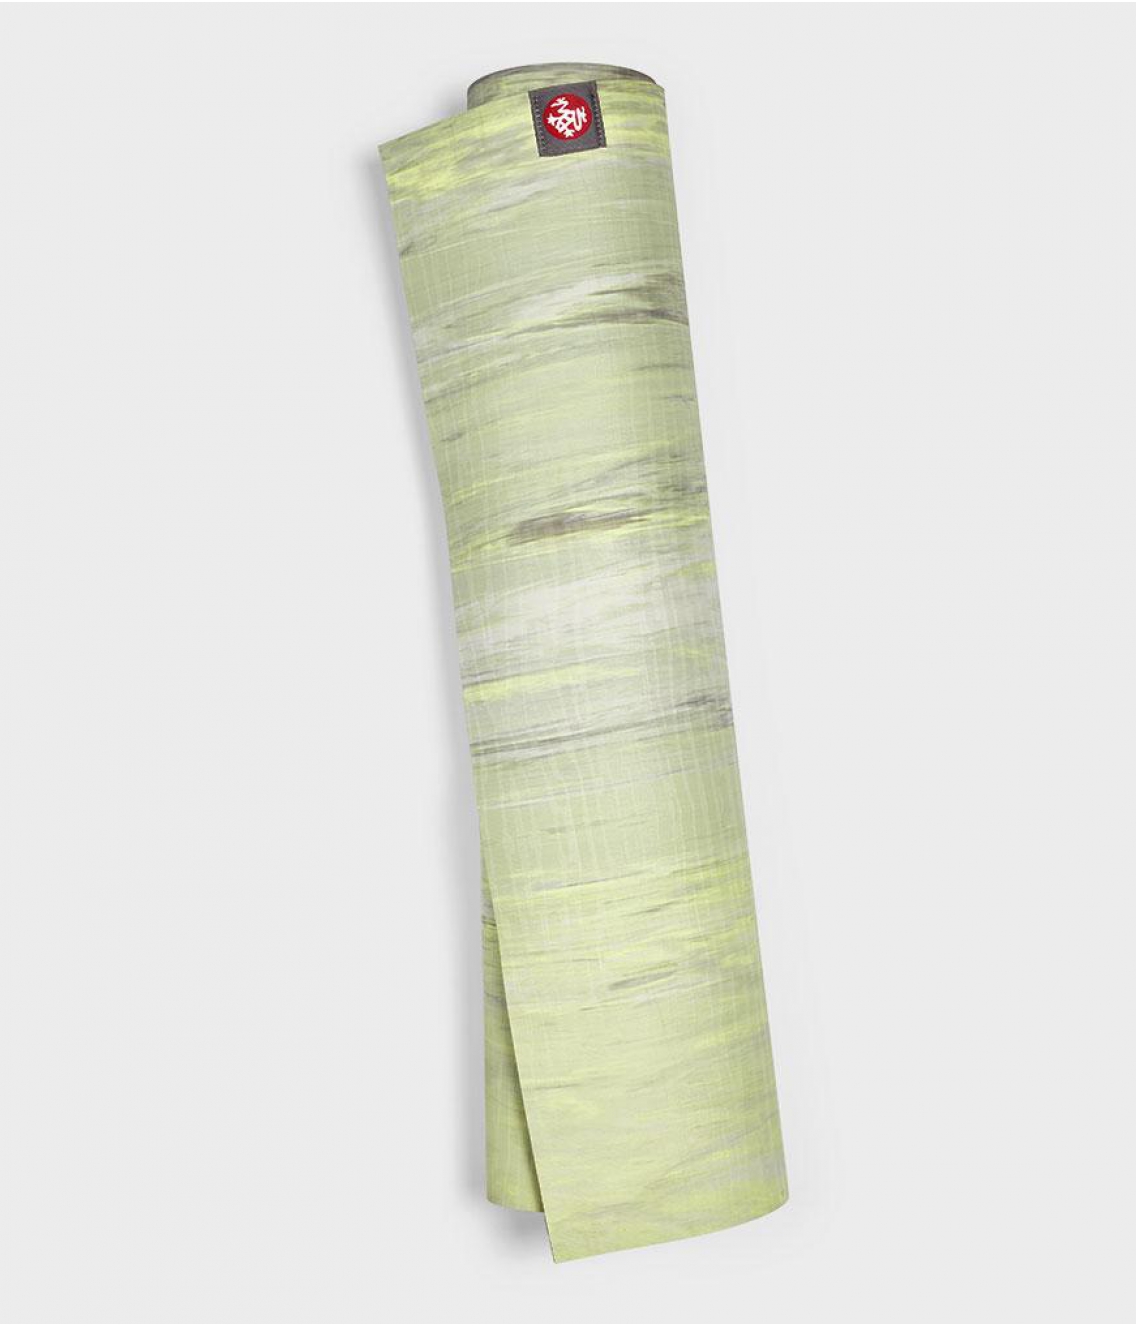 Профессиональный каучуковый коврик для йоги Manduka eKO lite 180*61*0,4 см - Limelight Marbled (Limited Edition)